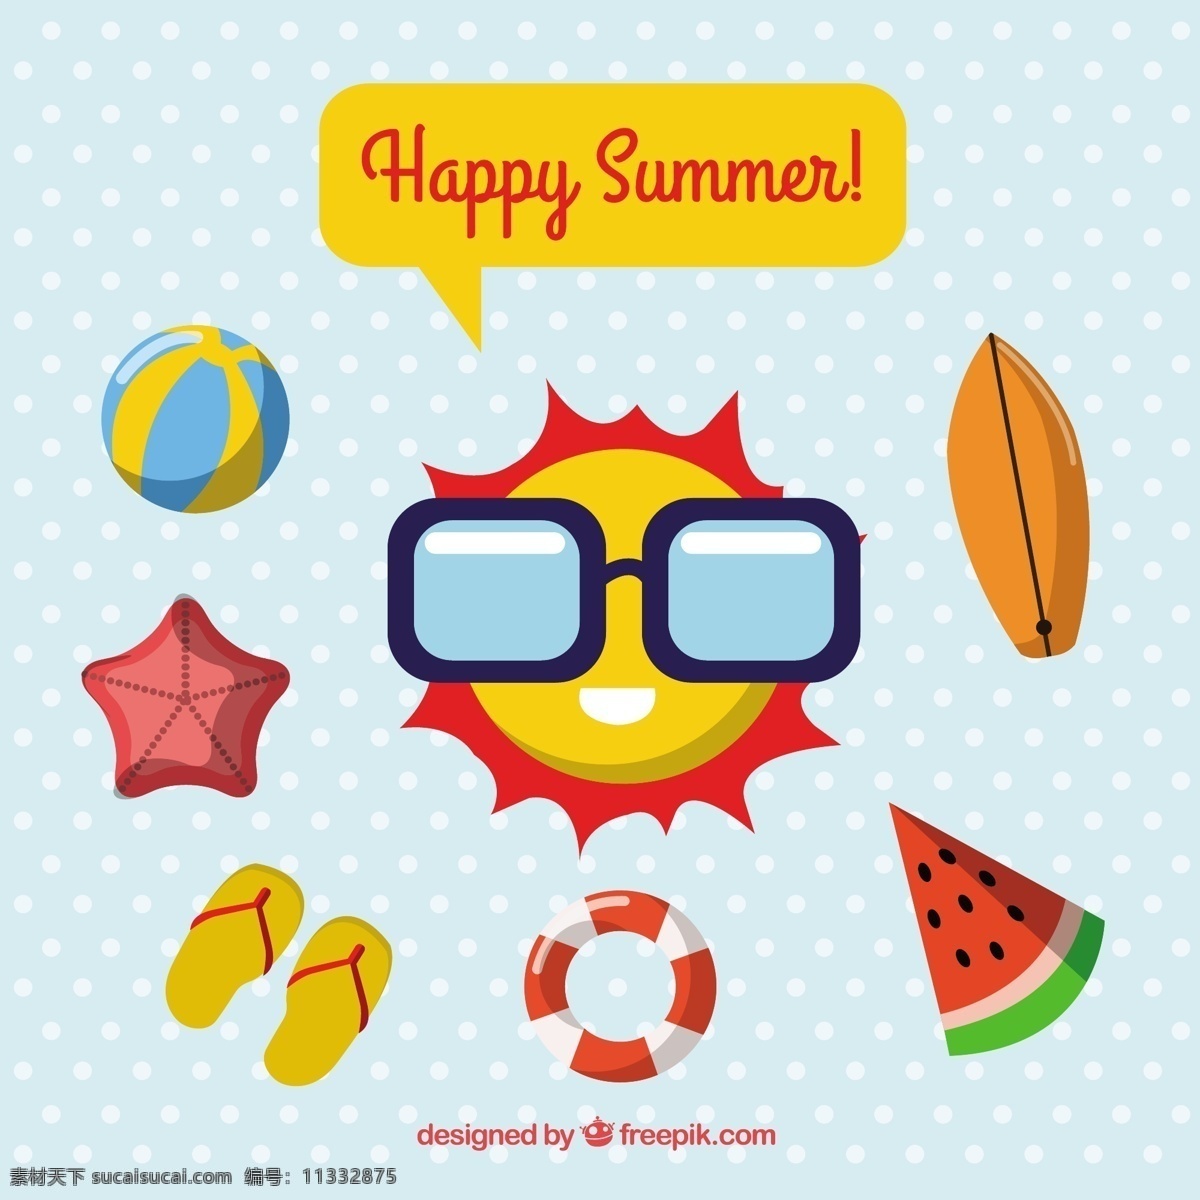 平夏元素包 夏季 海洋 海滩 阳光 水果 色彩 度假 公寓 球 平面设计 西瓜 元素 夏季海滩 季节 包装 海星